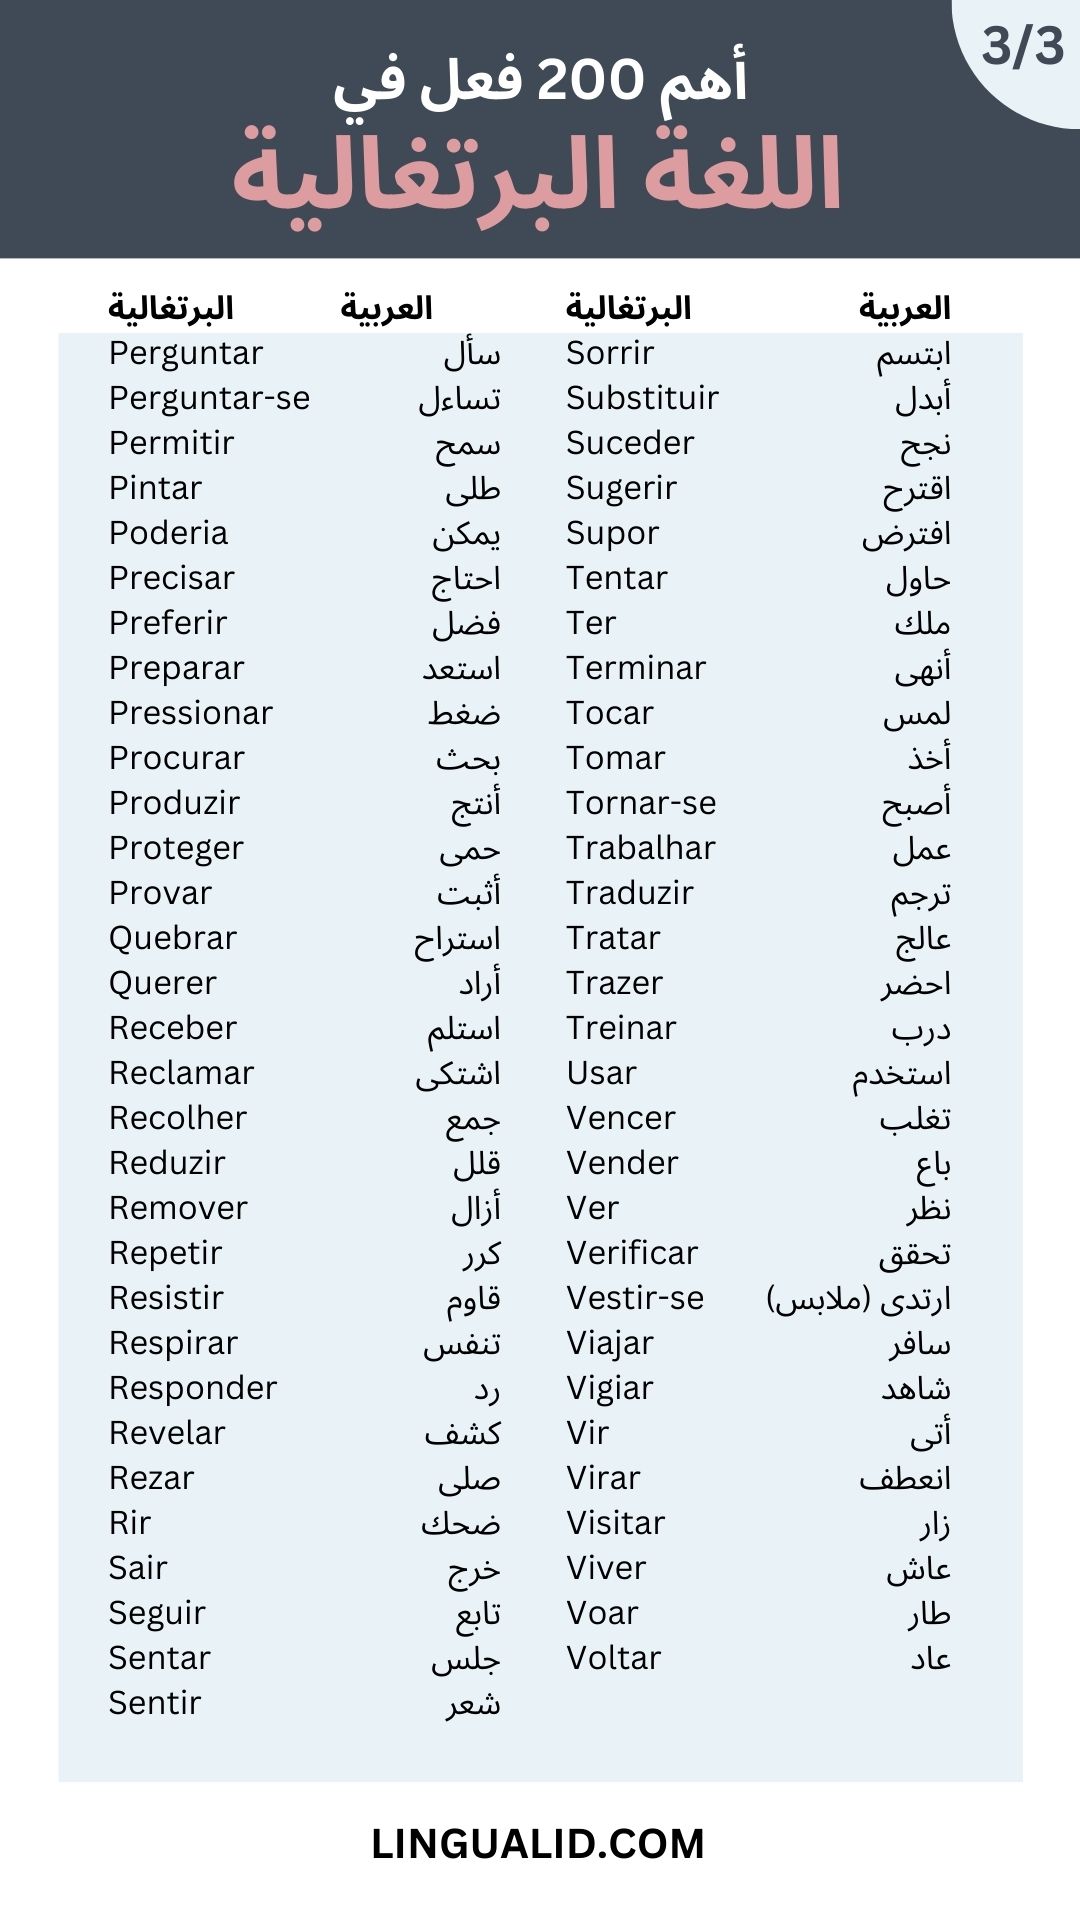 أهم 200 فعل في اللغة البرتغالية مع الترجمة العربية